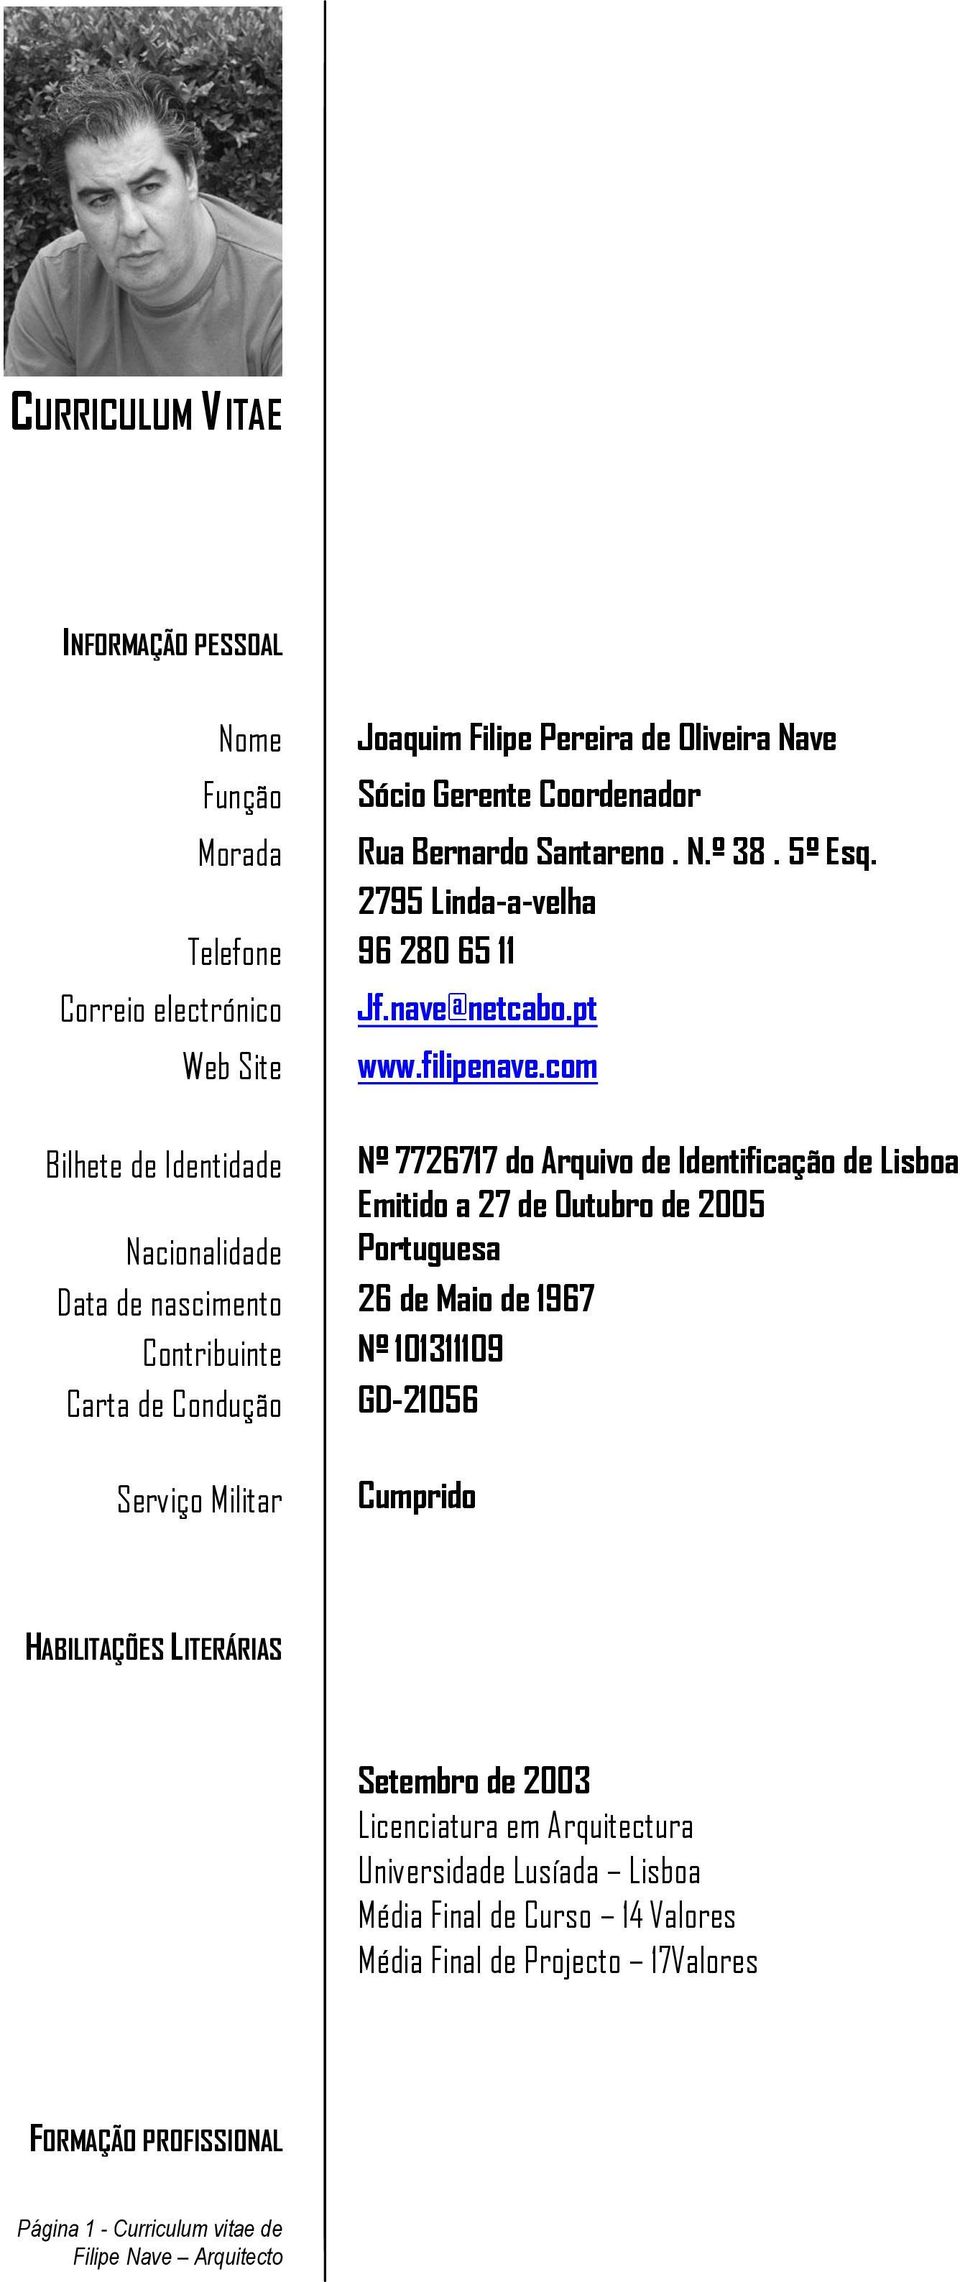 com Bilhete de Identidade Nº 7726717 do Arquivo de Identificação de Lisboa Emitido a 27 de Outubro de 2005 Nacionalidade Portuguesa Data de nascimento 26 de Maio de 1967 Contribuinte